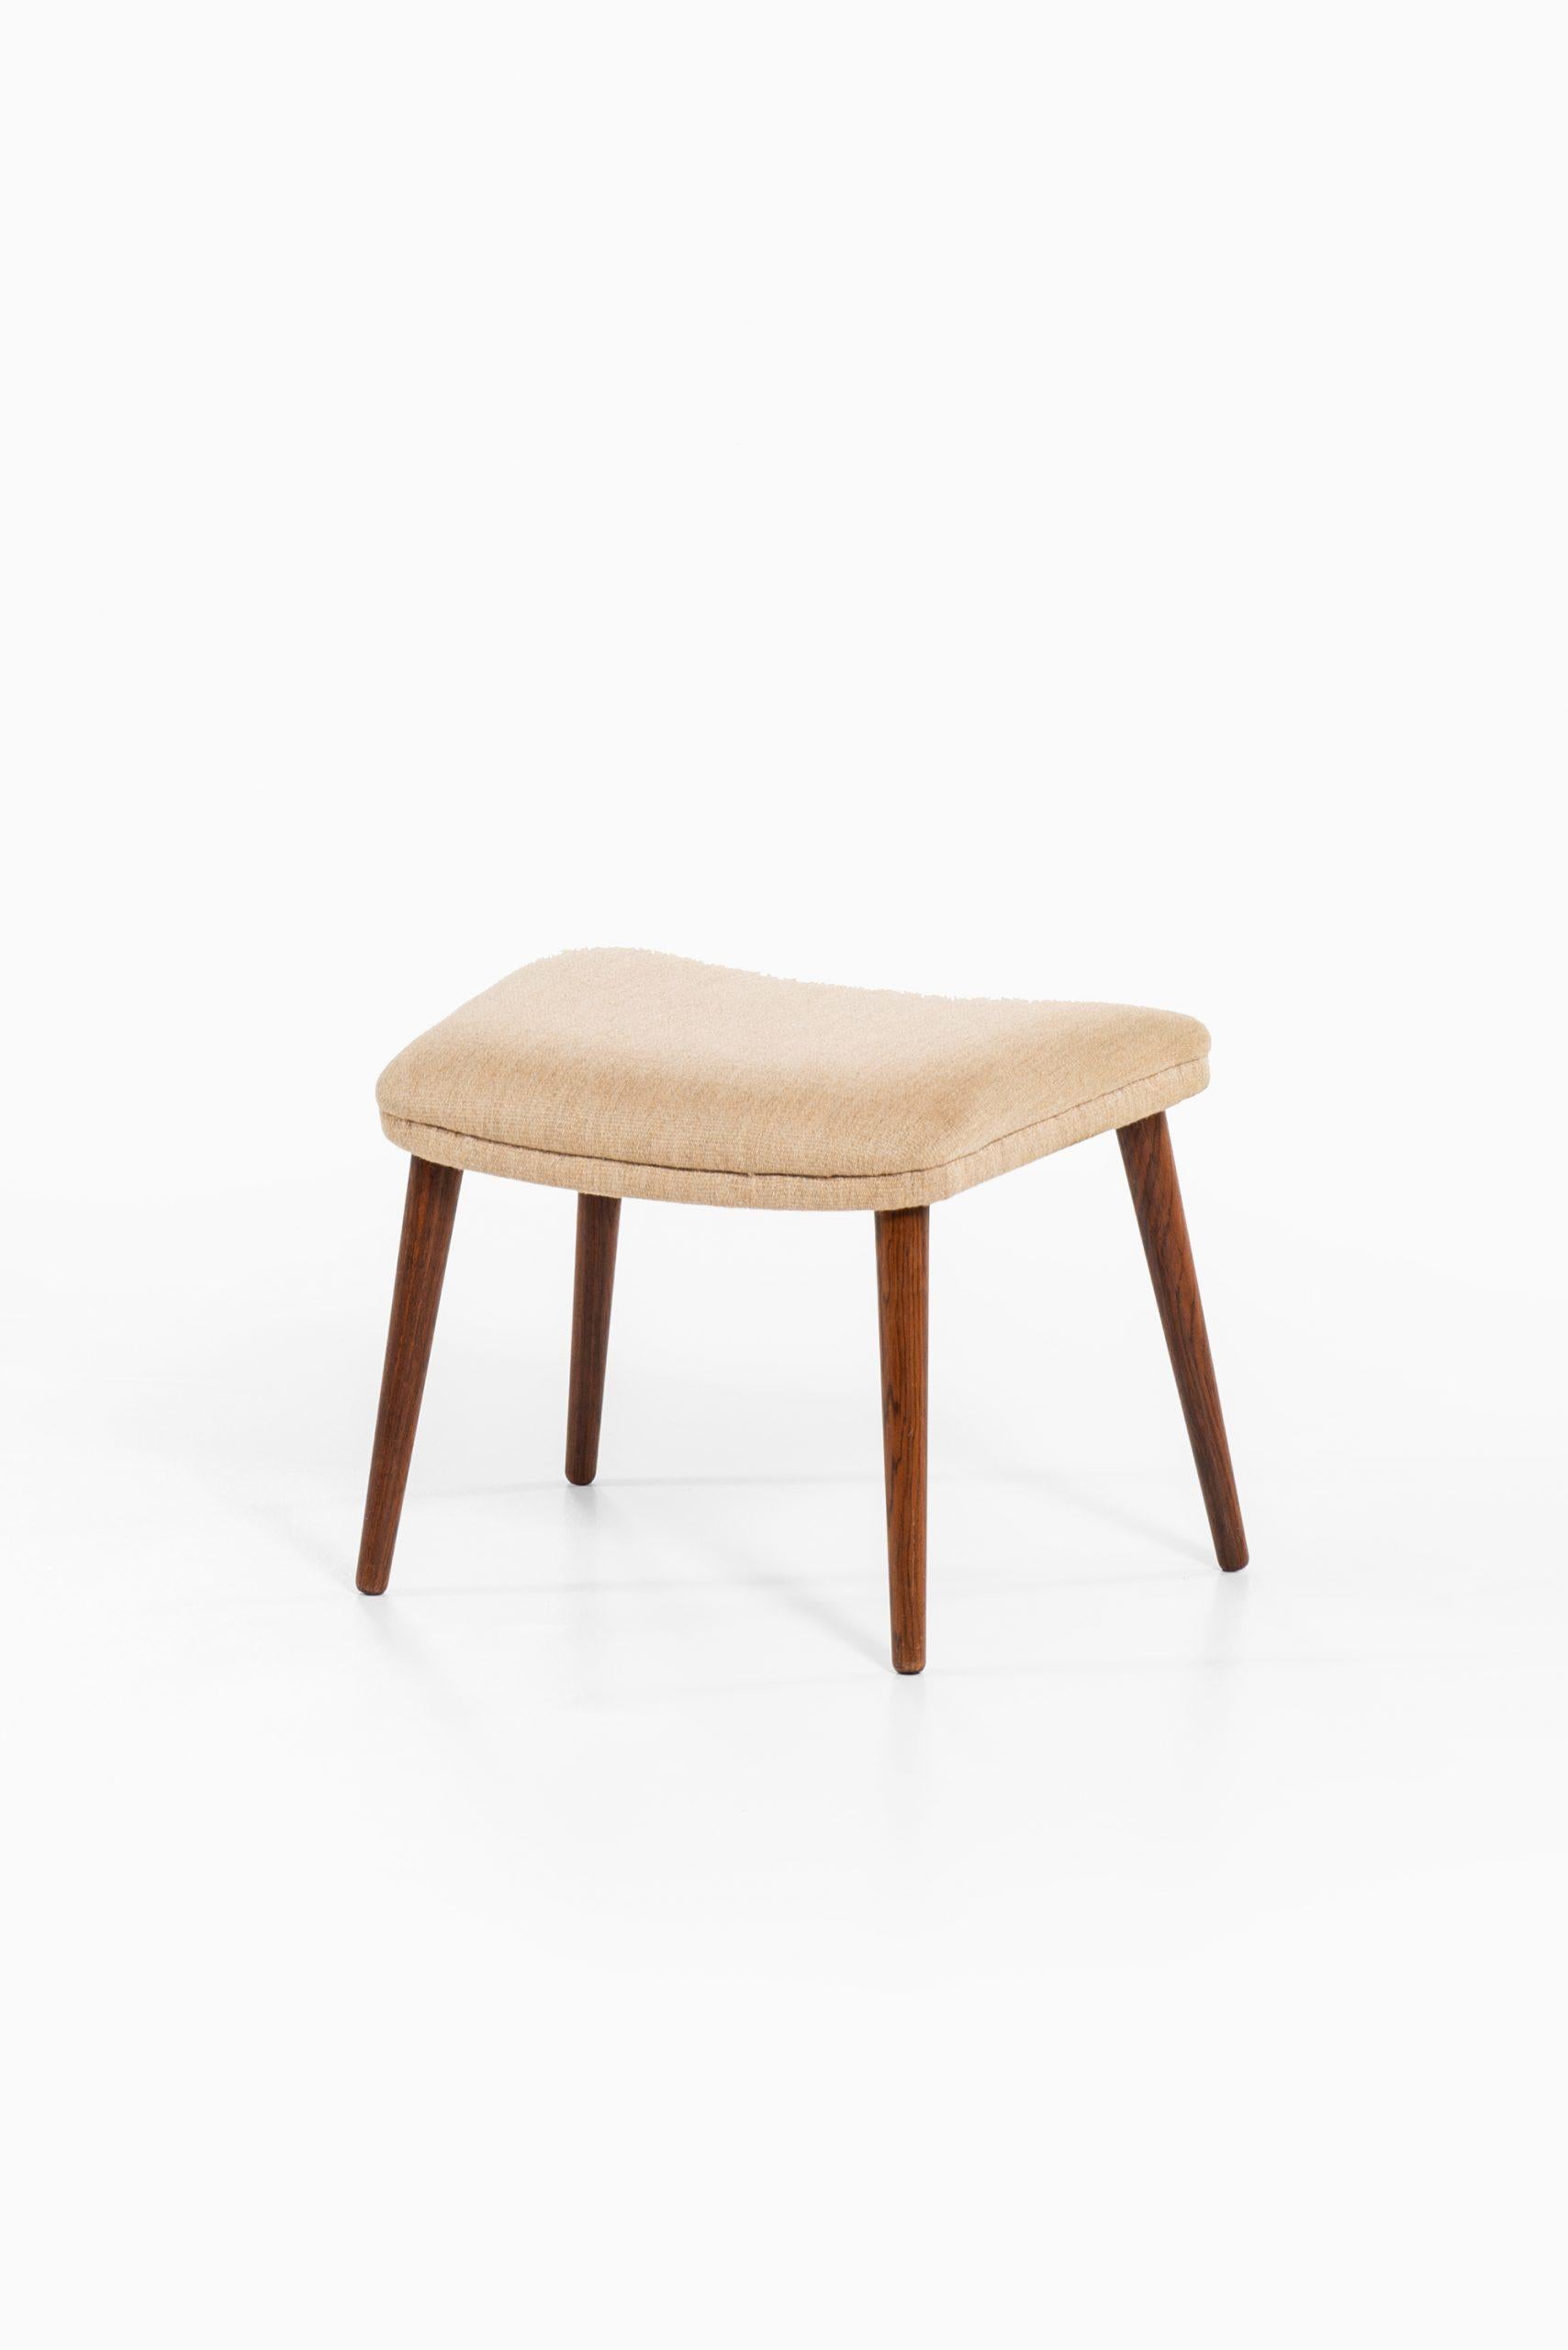 Rare stool model 91 designed by Illum Wikkelsø. Produced by Michael Laursen in Aarhus, Denmark.